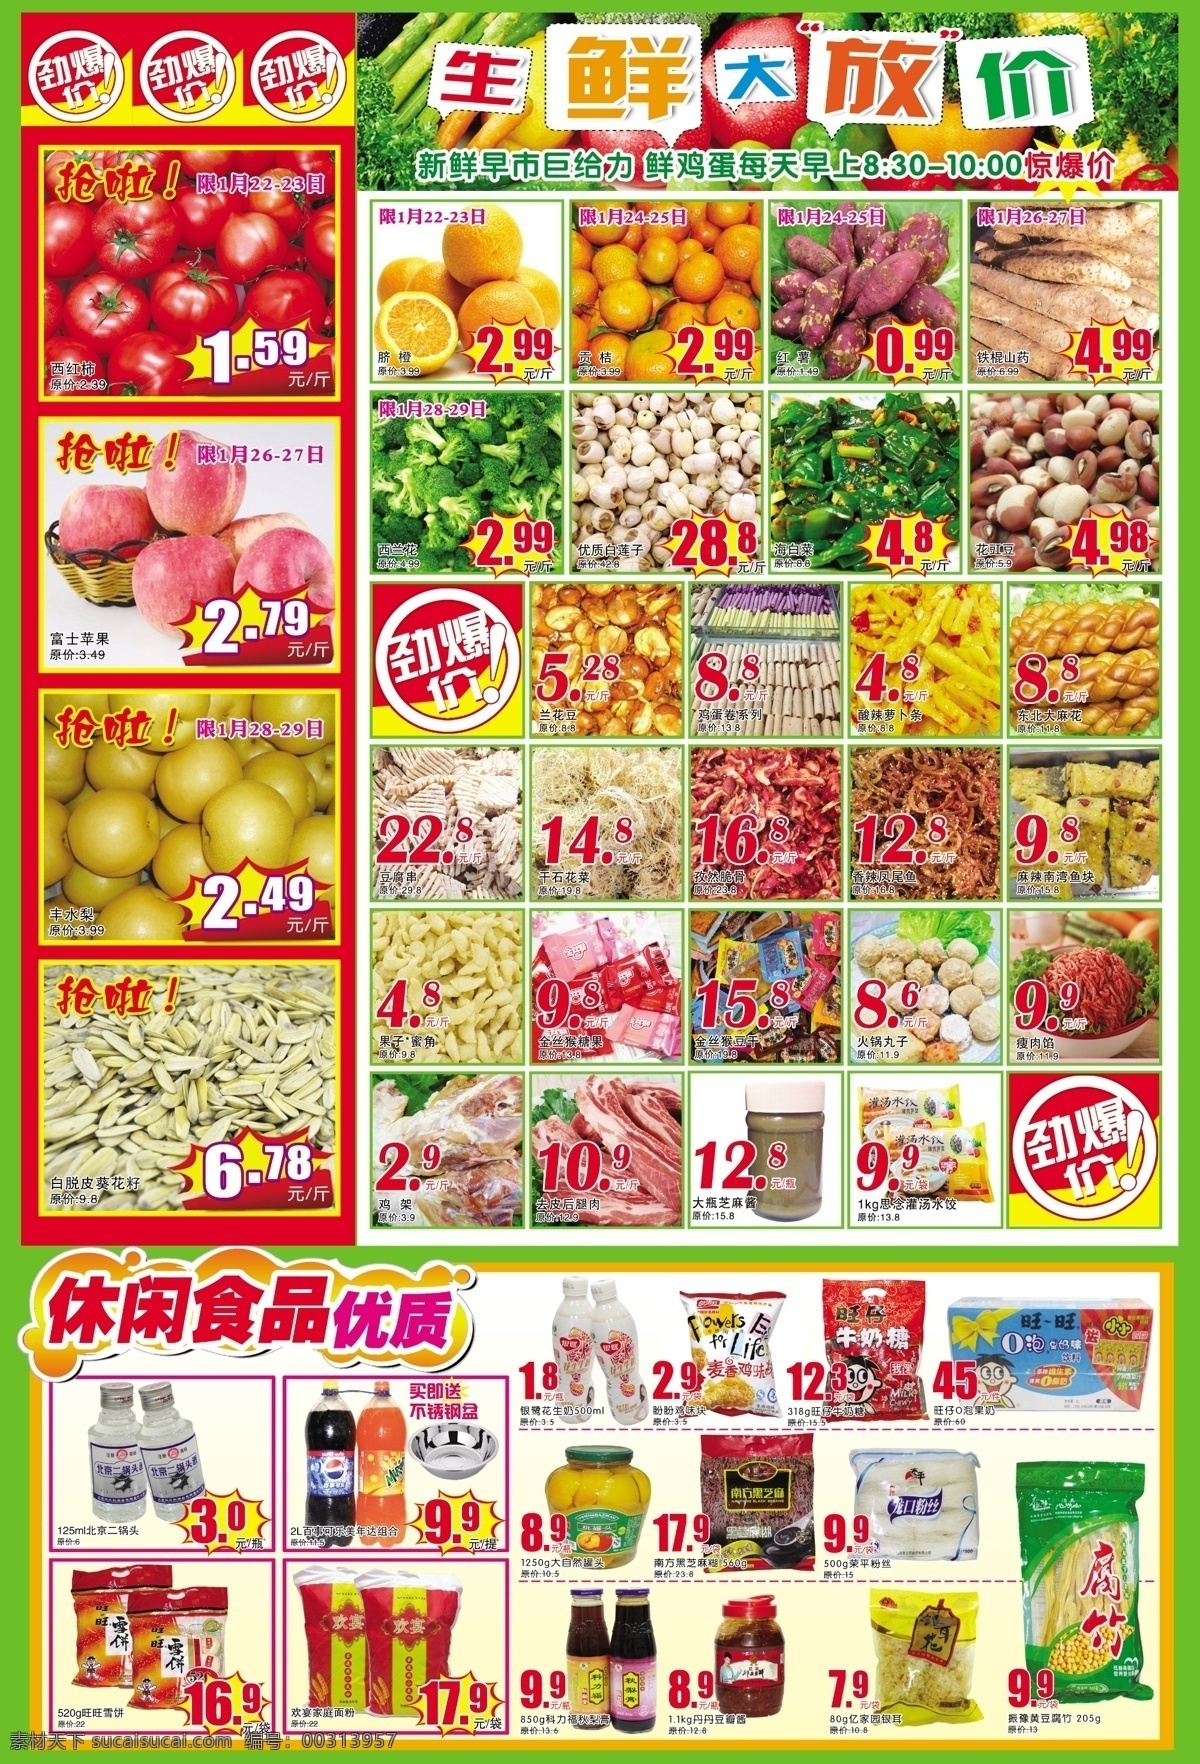 超市 生鲜 促销活动 彩页 dm 生活广场 商场 促销 活动彩页 超市图片 日用品 dm宣传单 红色